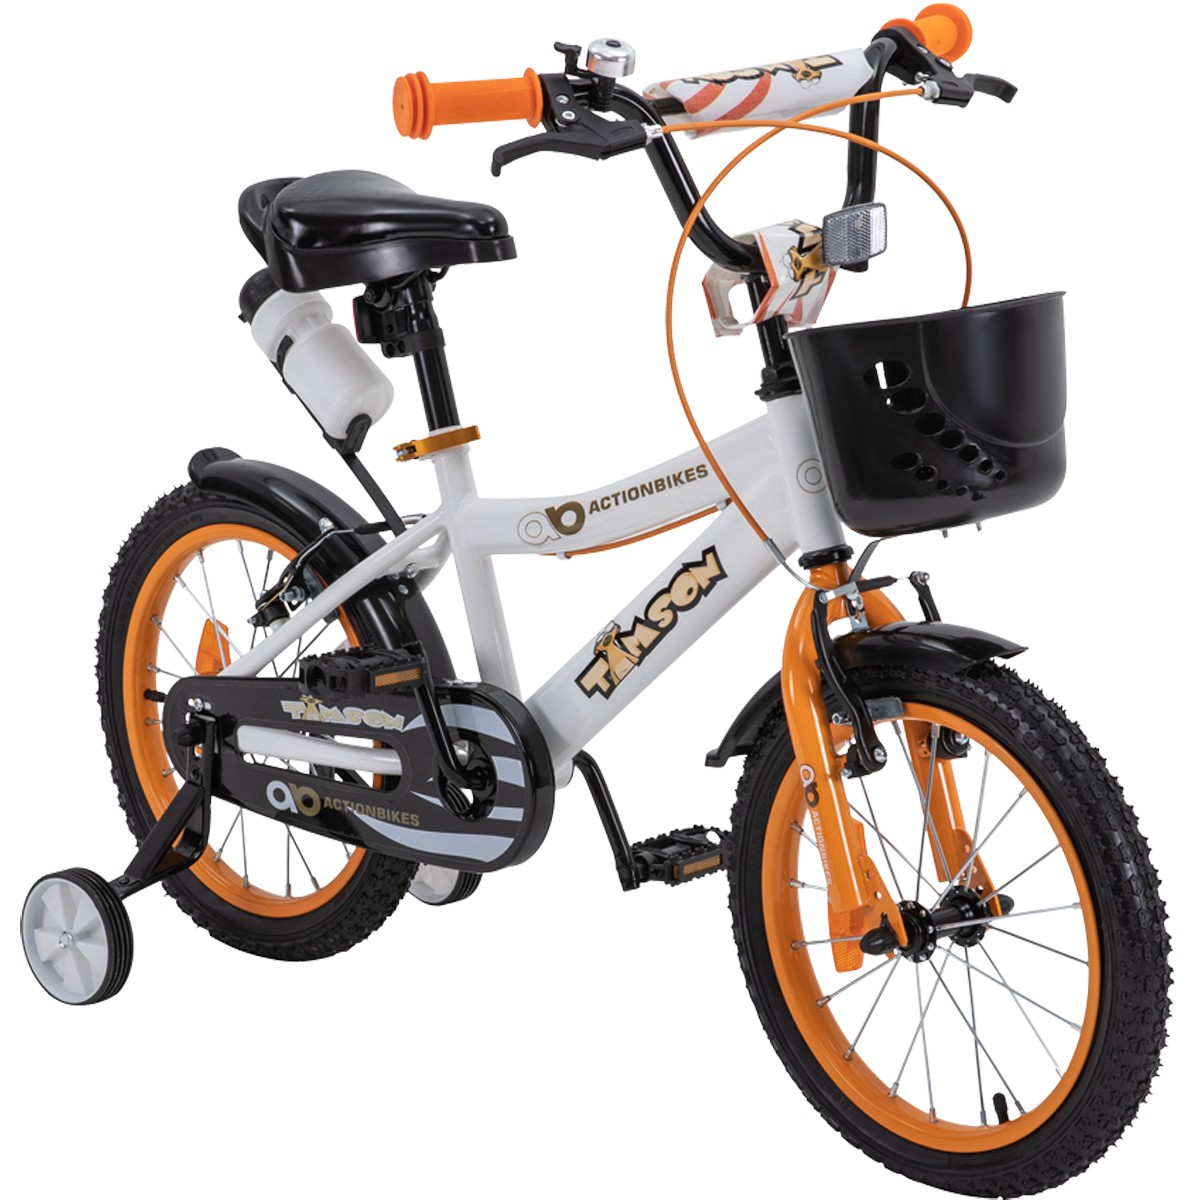 01-start-kinderfahrrad-16-zoll-orange-actionbikes-motors-timson